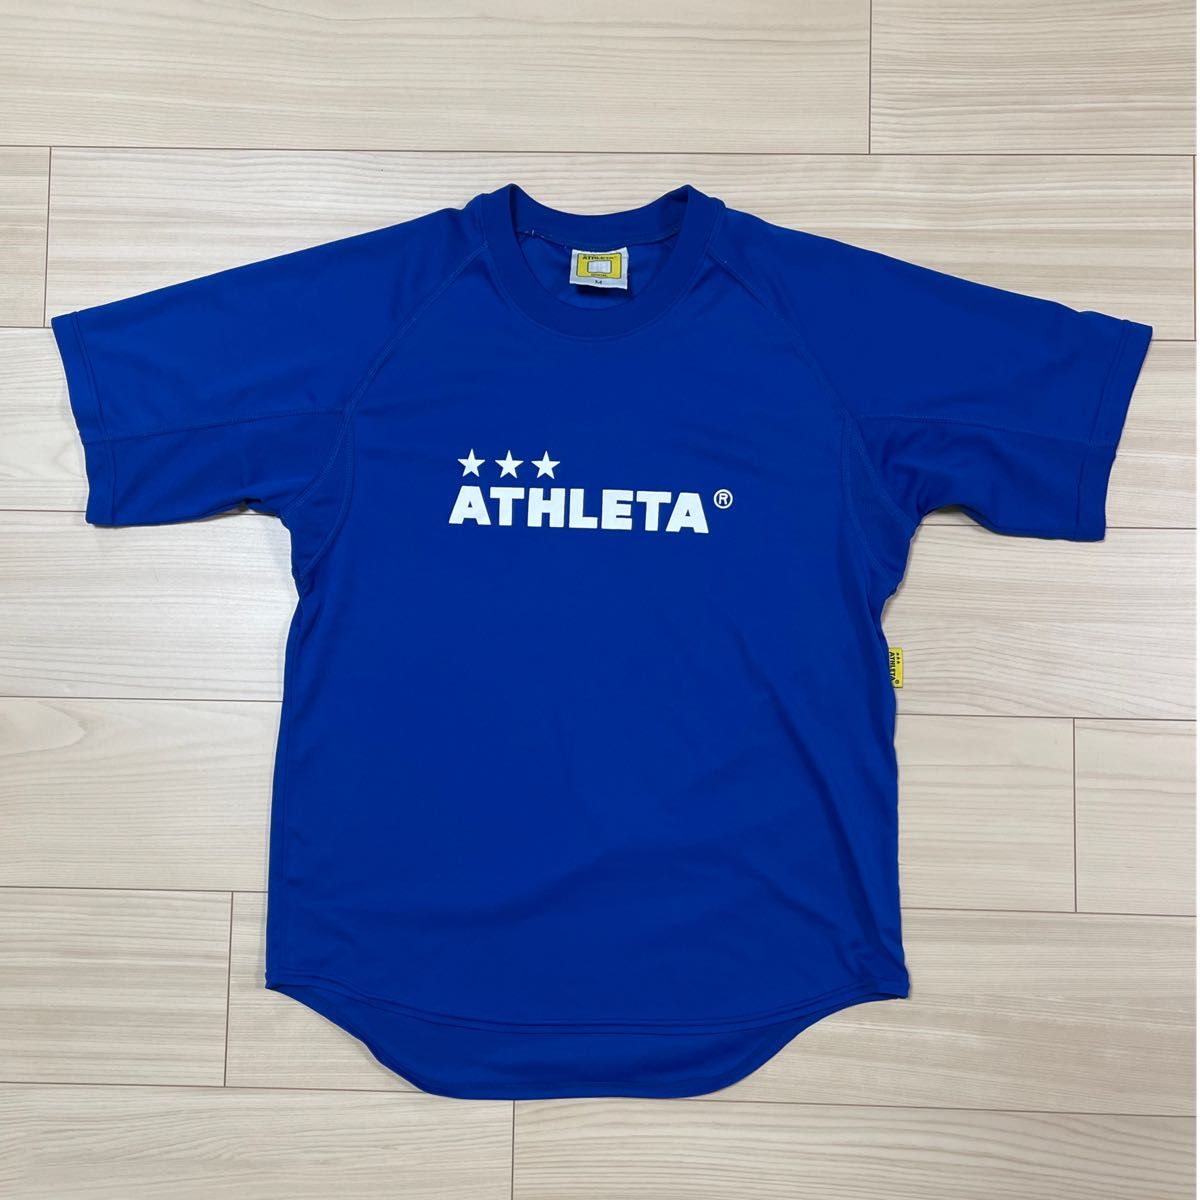 アスレタ 半袖Tシャツ プラクティスシャサイズ:S MATHLETA サッカー フットサル